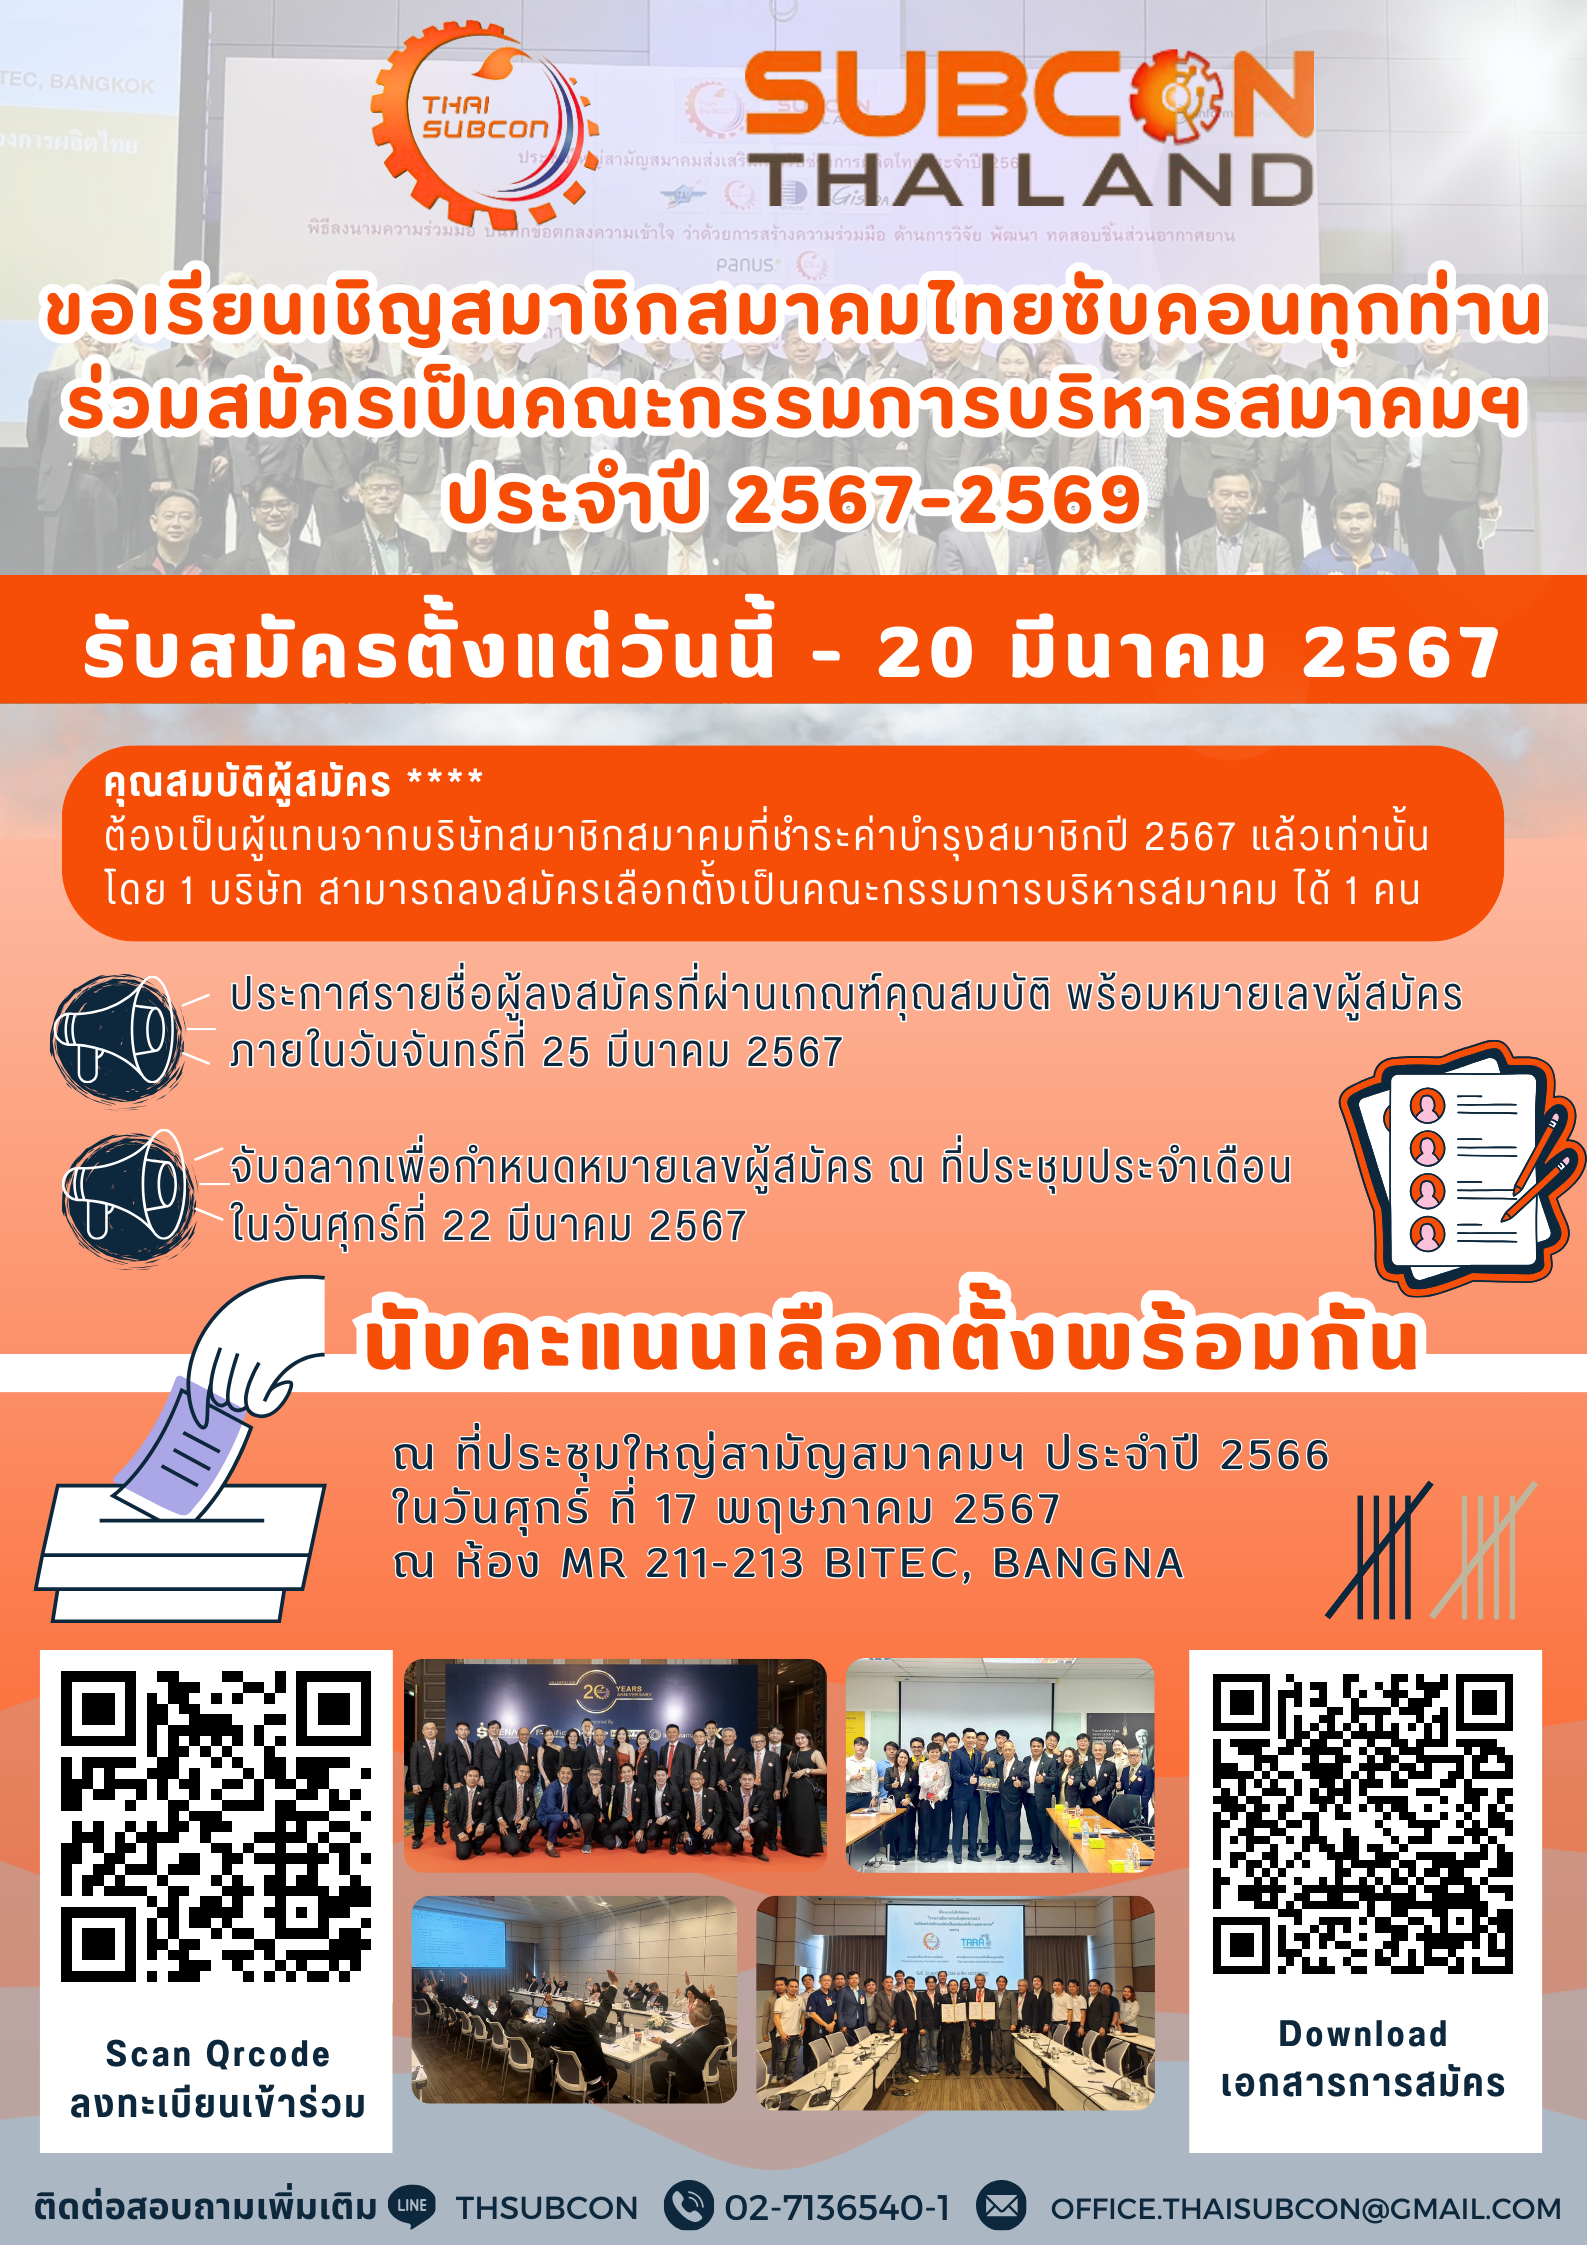 สมัครคณะกรรมการบริหารสมาคมไทยซับคอน ประจำวาระปี 2567-2569